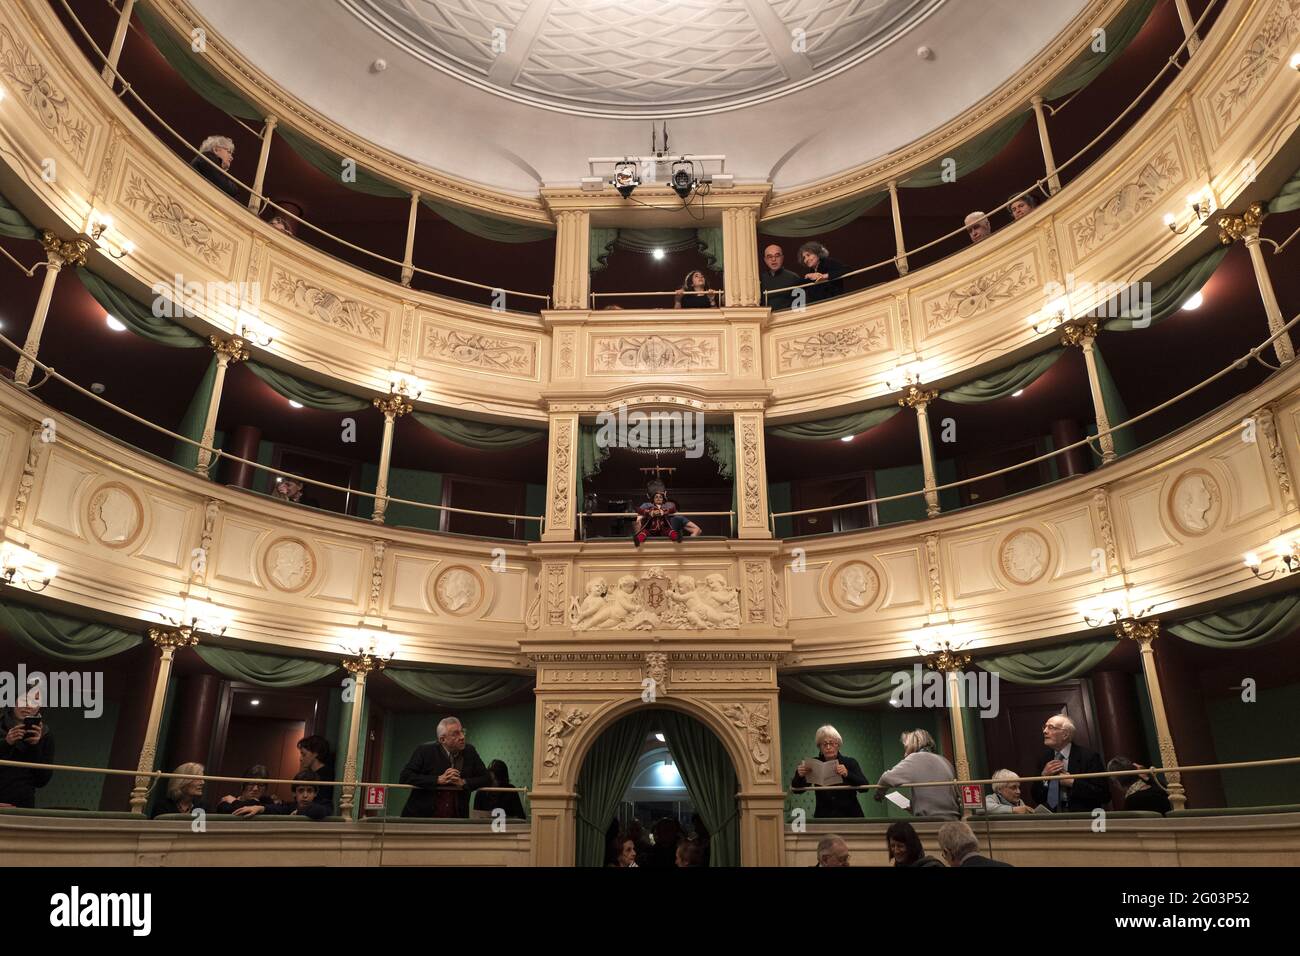 Interni dello storico teatro Gerolamo fondato nel 1868, a Milano. Foto Stock